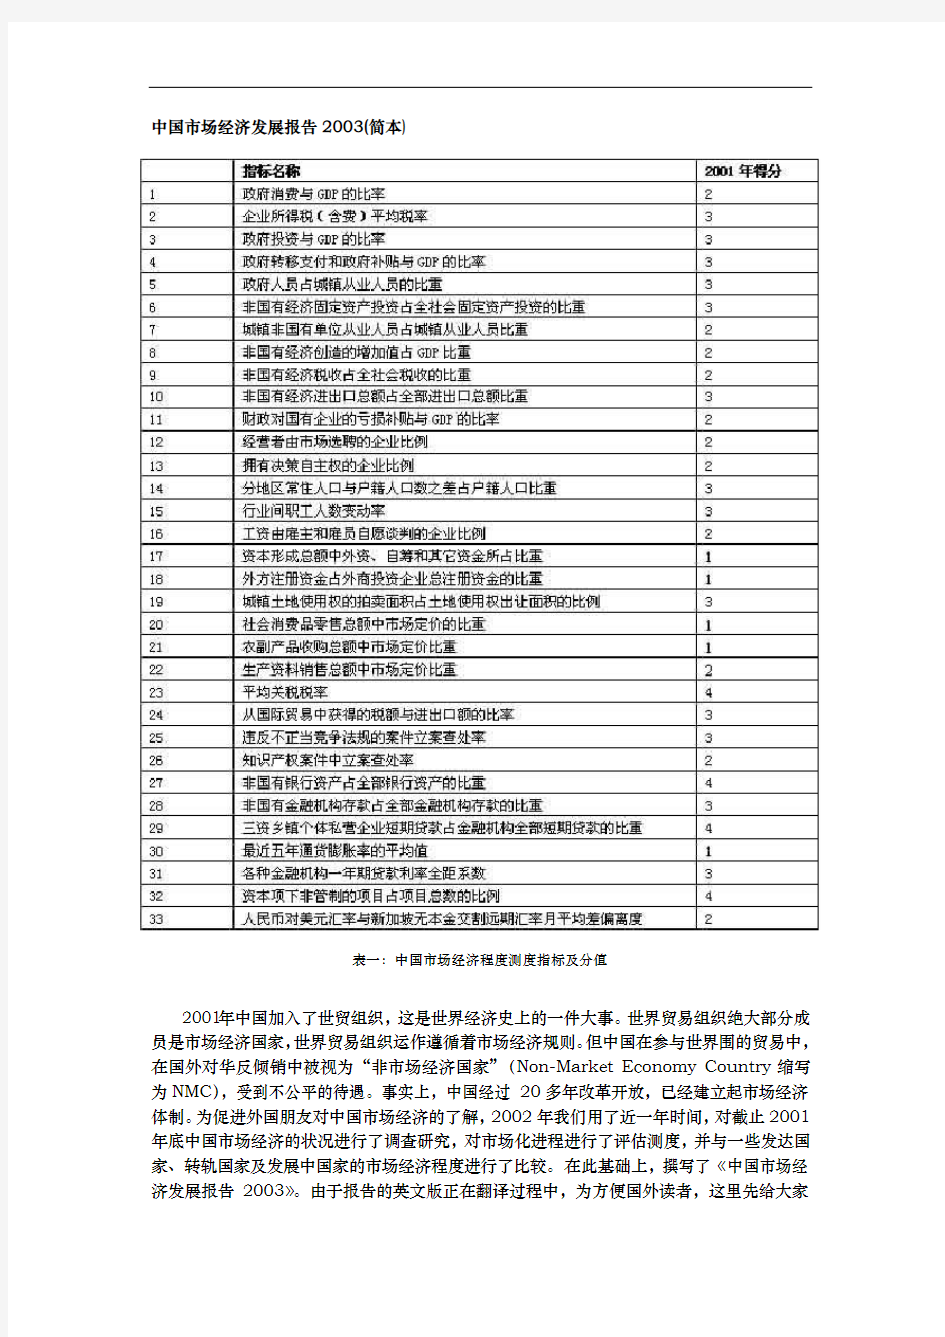 中国市场经济发展分析报告文案